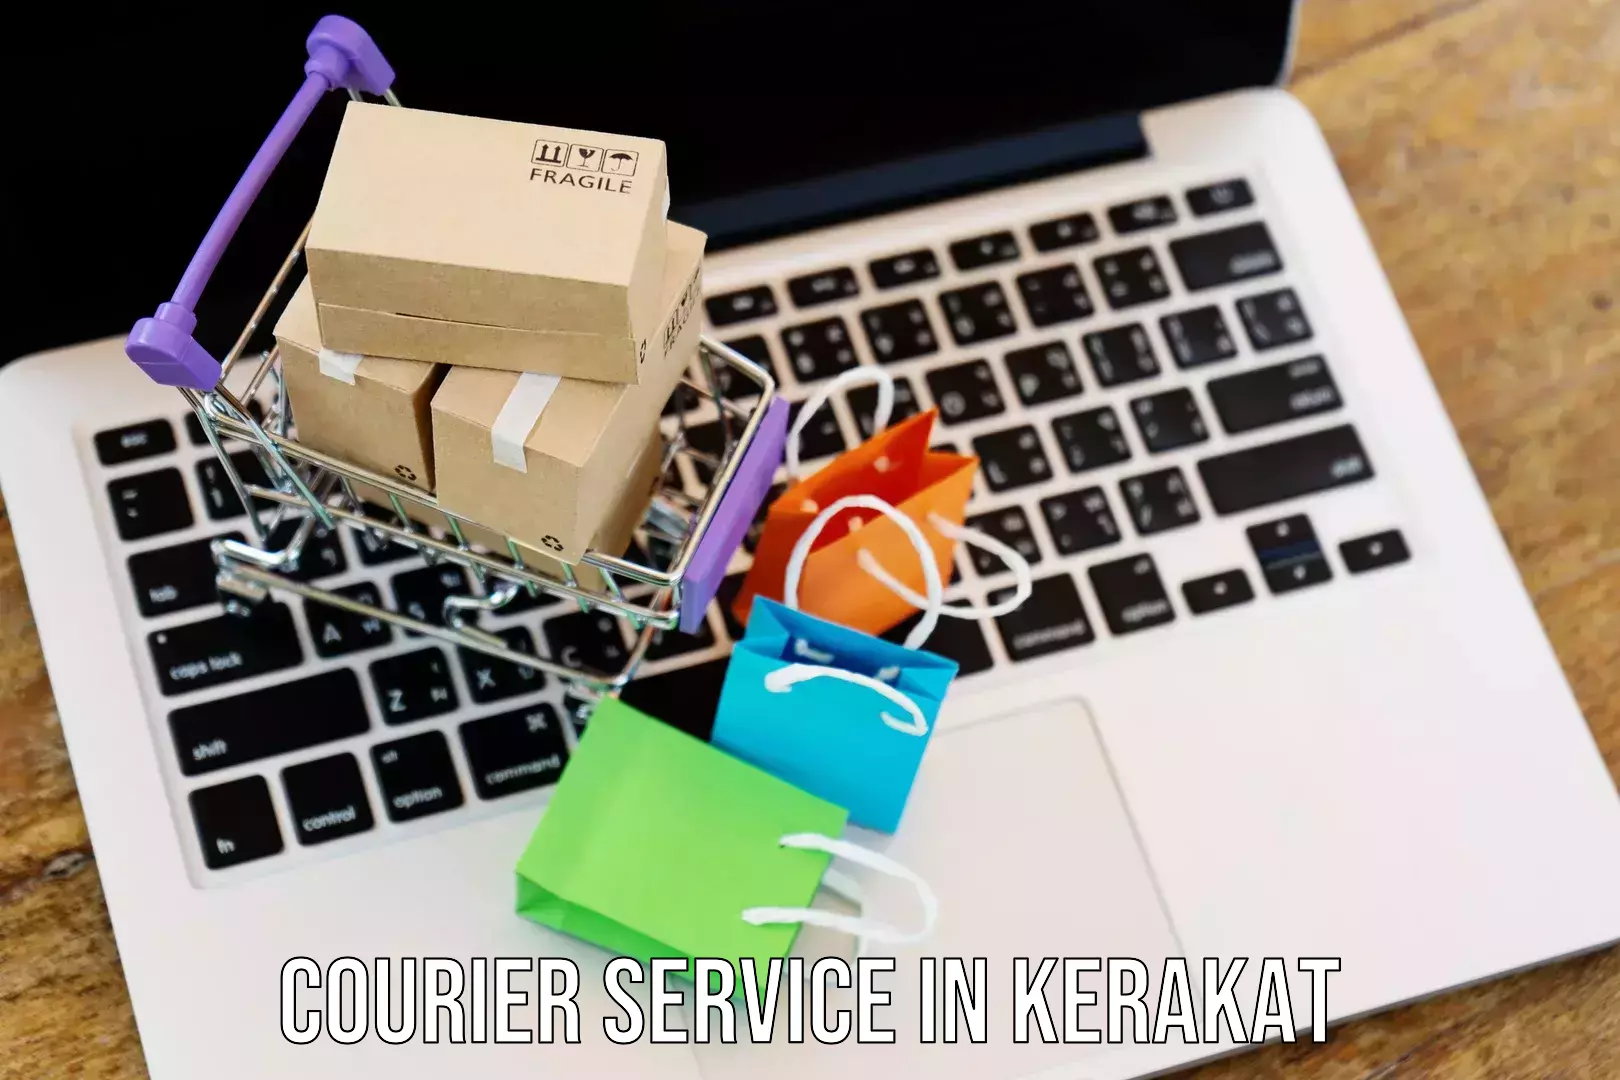 Express courier capabilities in Kerakat